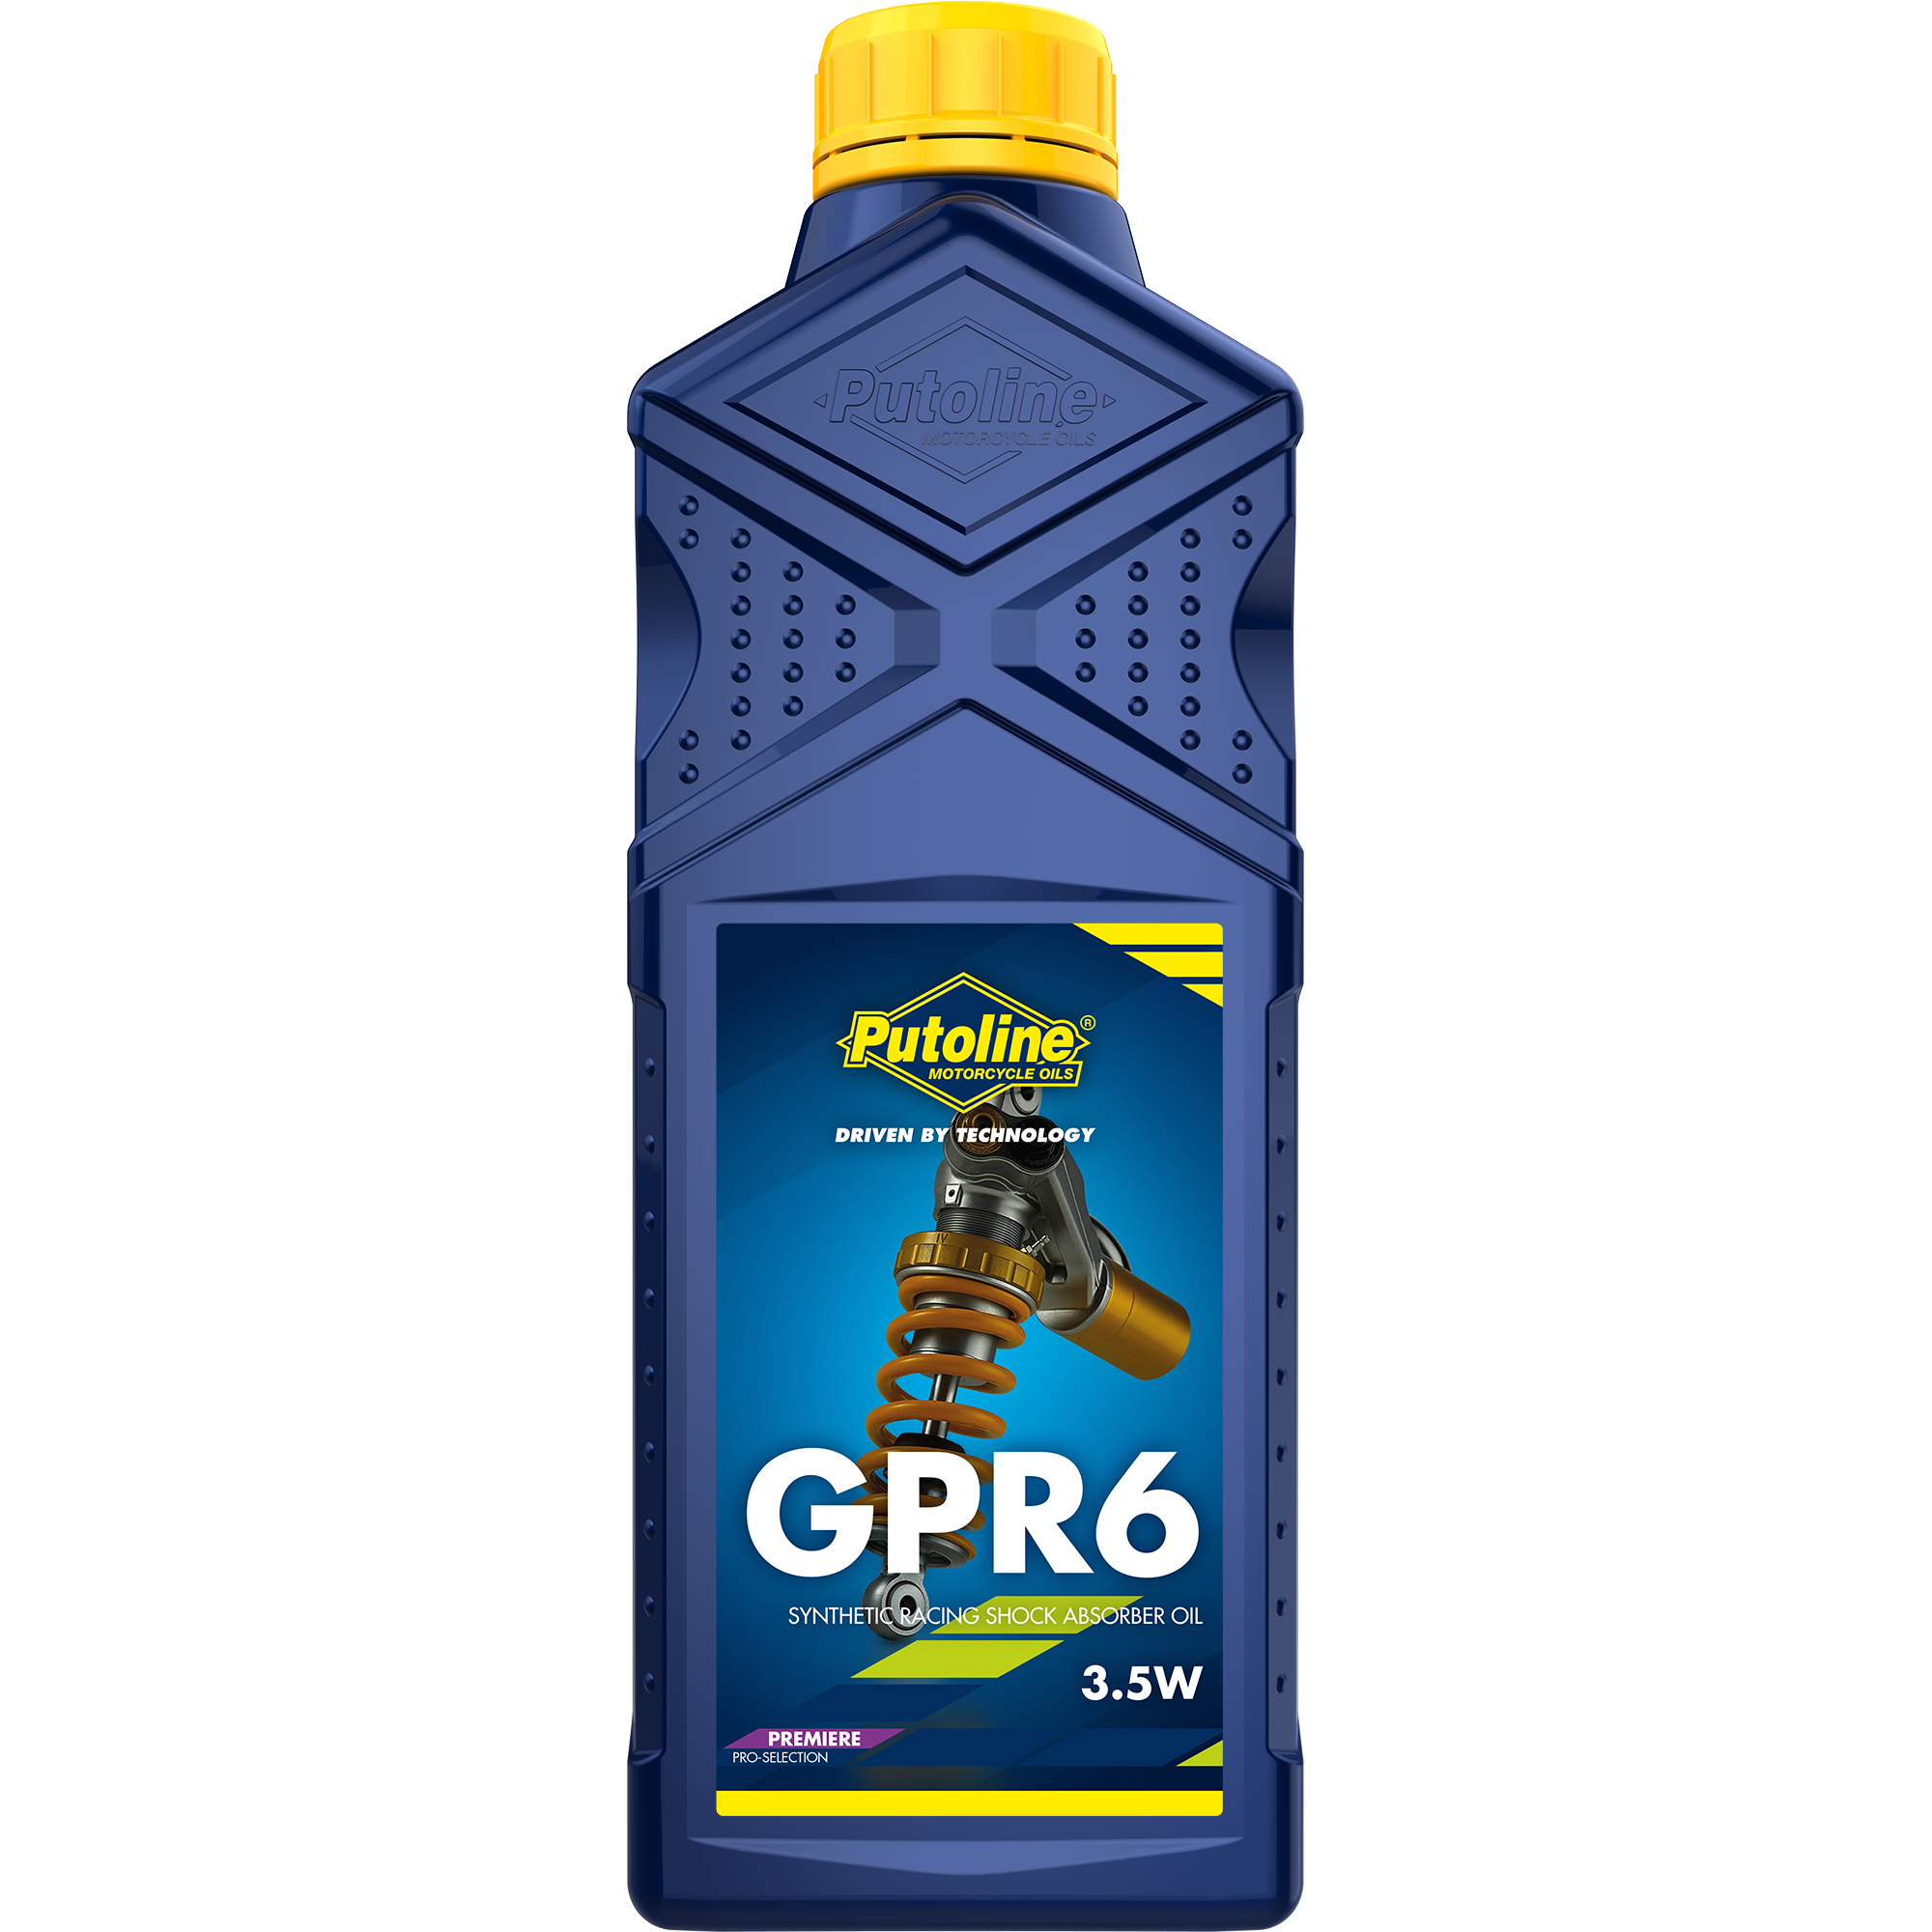 Putoline GPR 6 3.5W, 12 x 1 lt detail 2